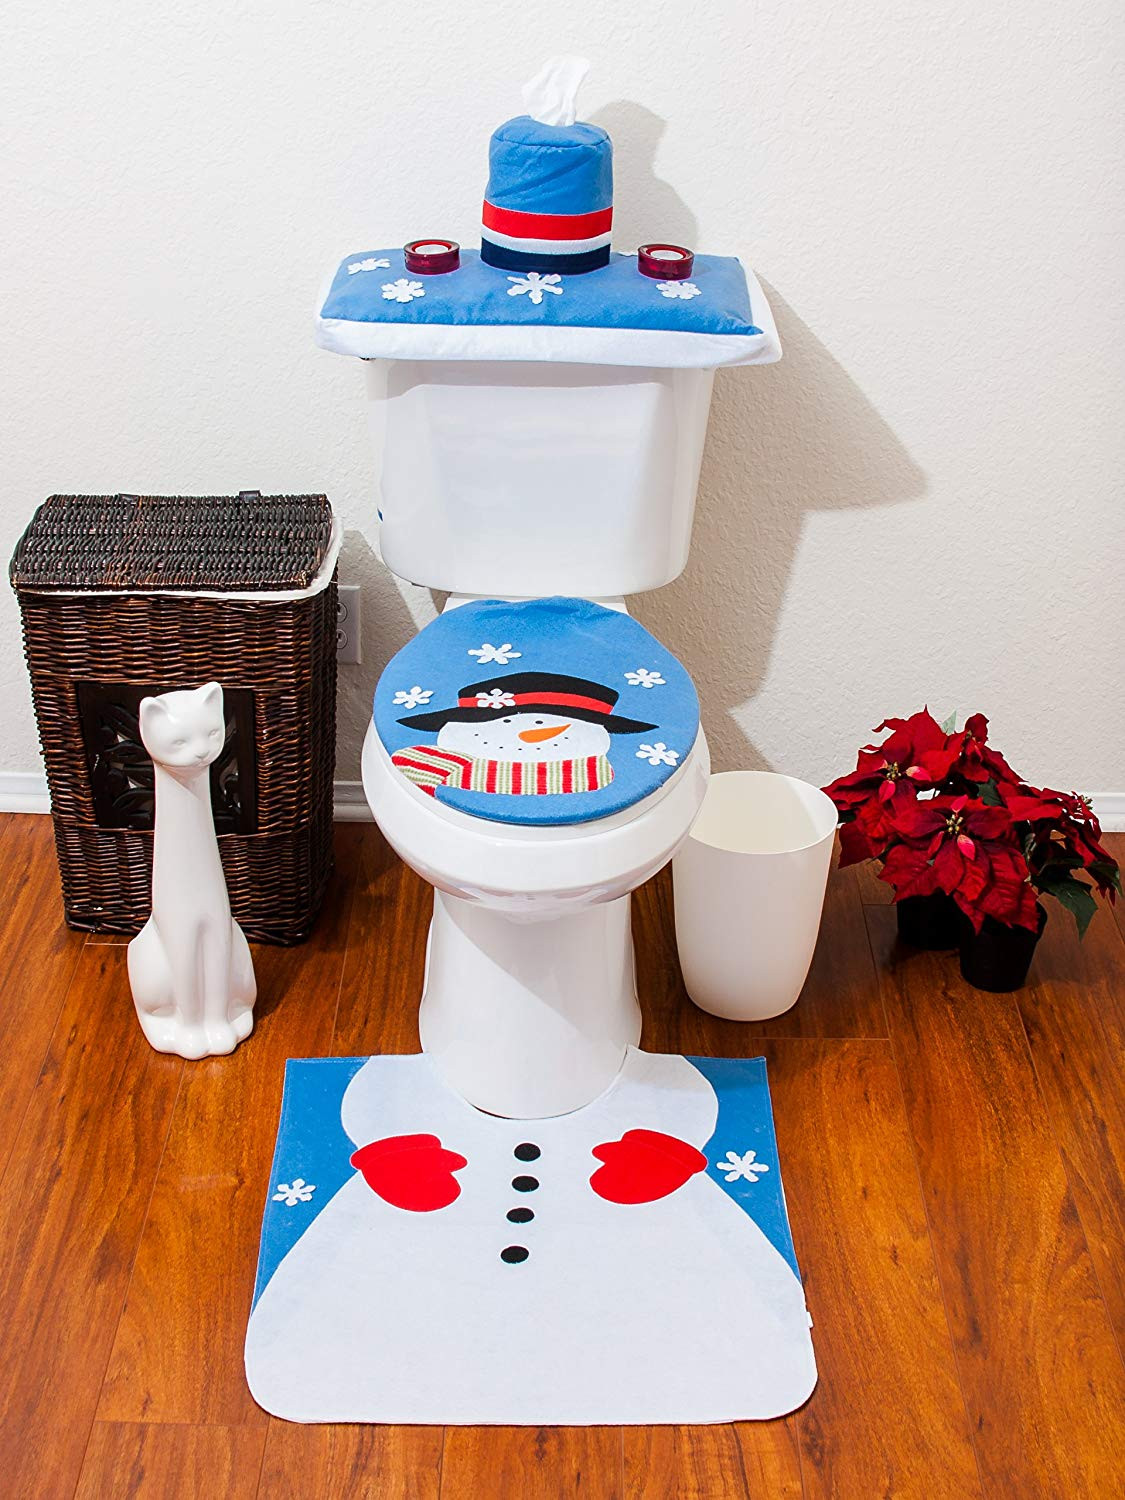 Christmas Bathroom Rug Sets
 4 Pcs Christmas Santa Bathroom Toilet Seat Cover and Rug